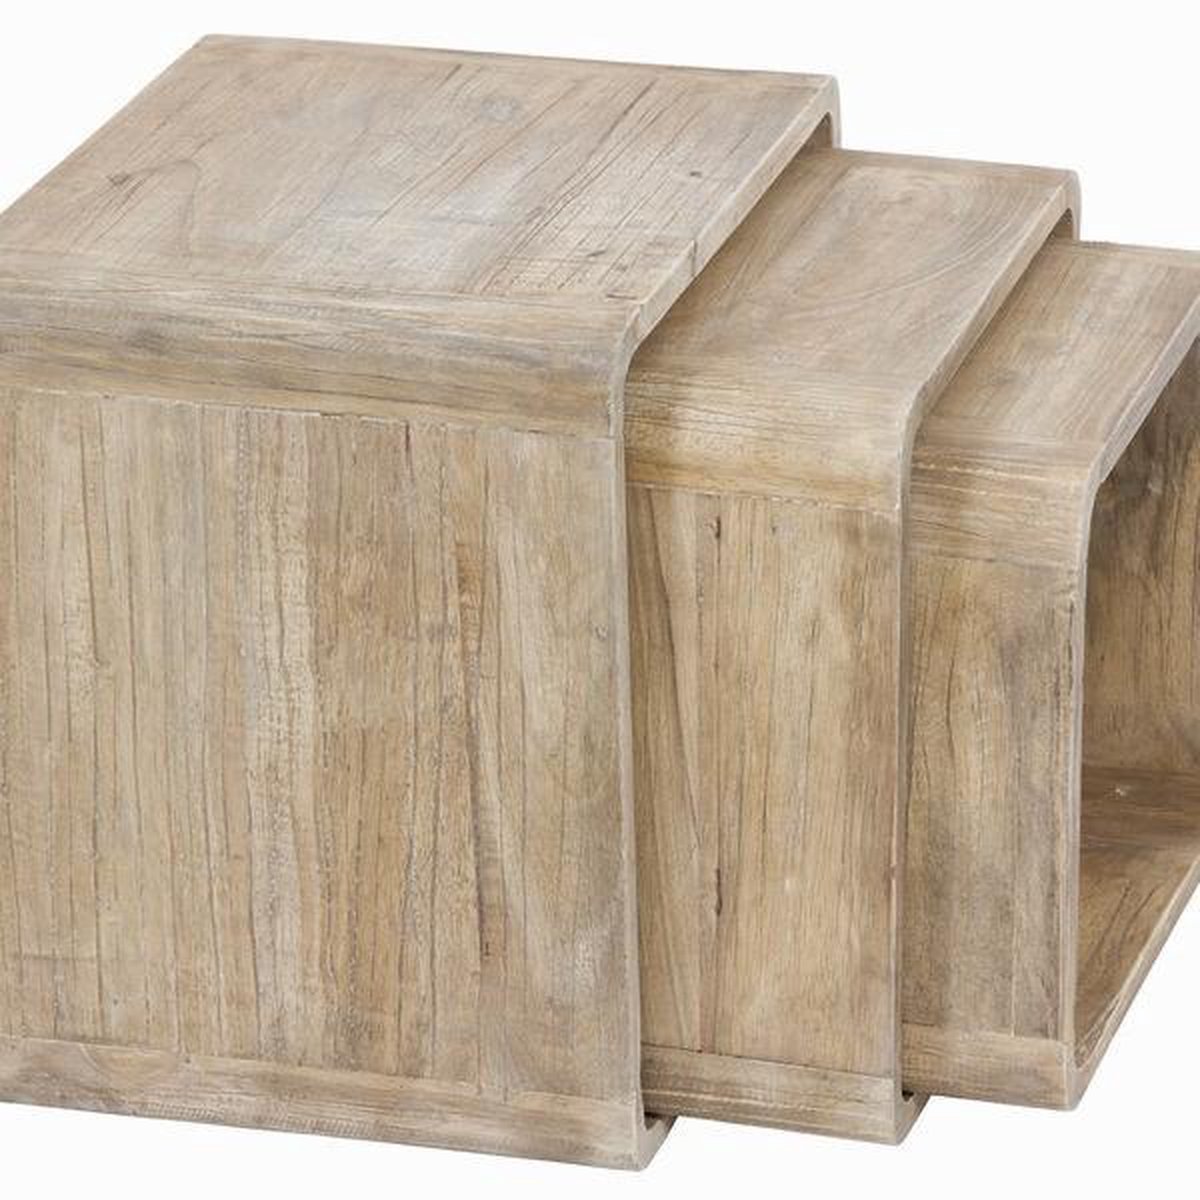 Set van 3 houten kubussen - Pure Life Collectie by Craften Wood | bol.com